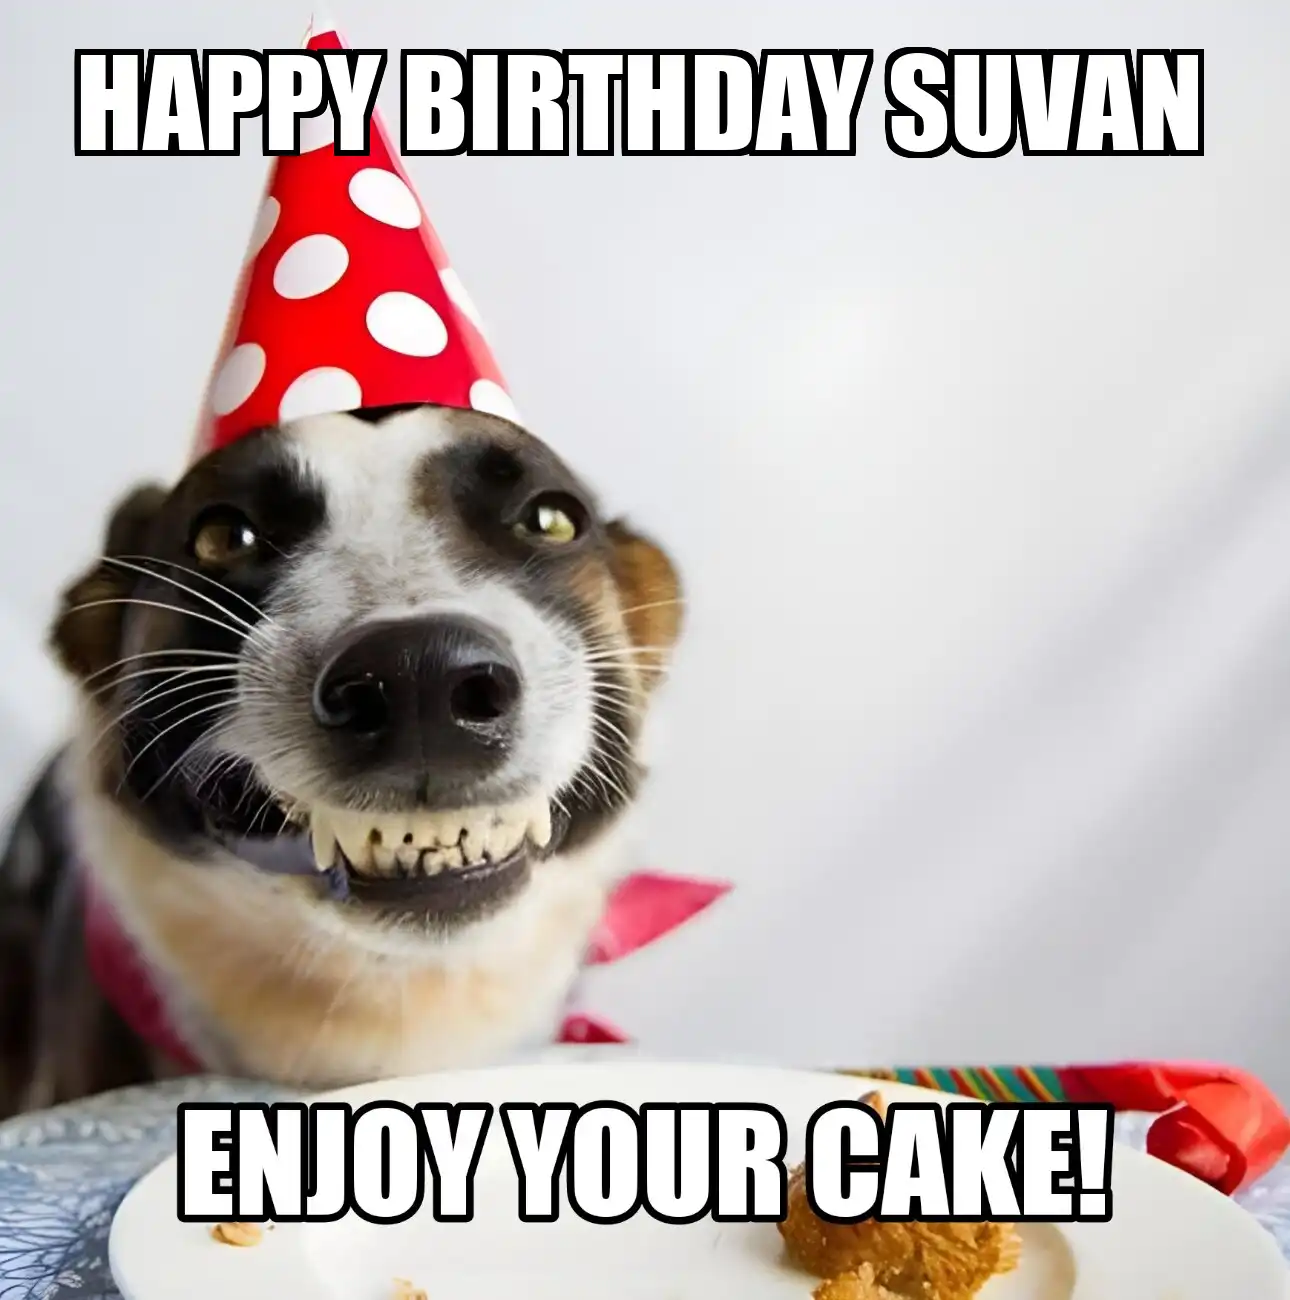 Happy Birthday Suvan Enjoy Your Cake Dog Meme